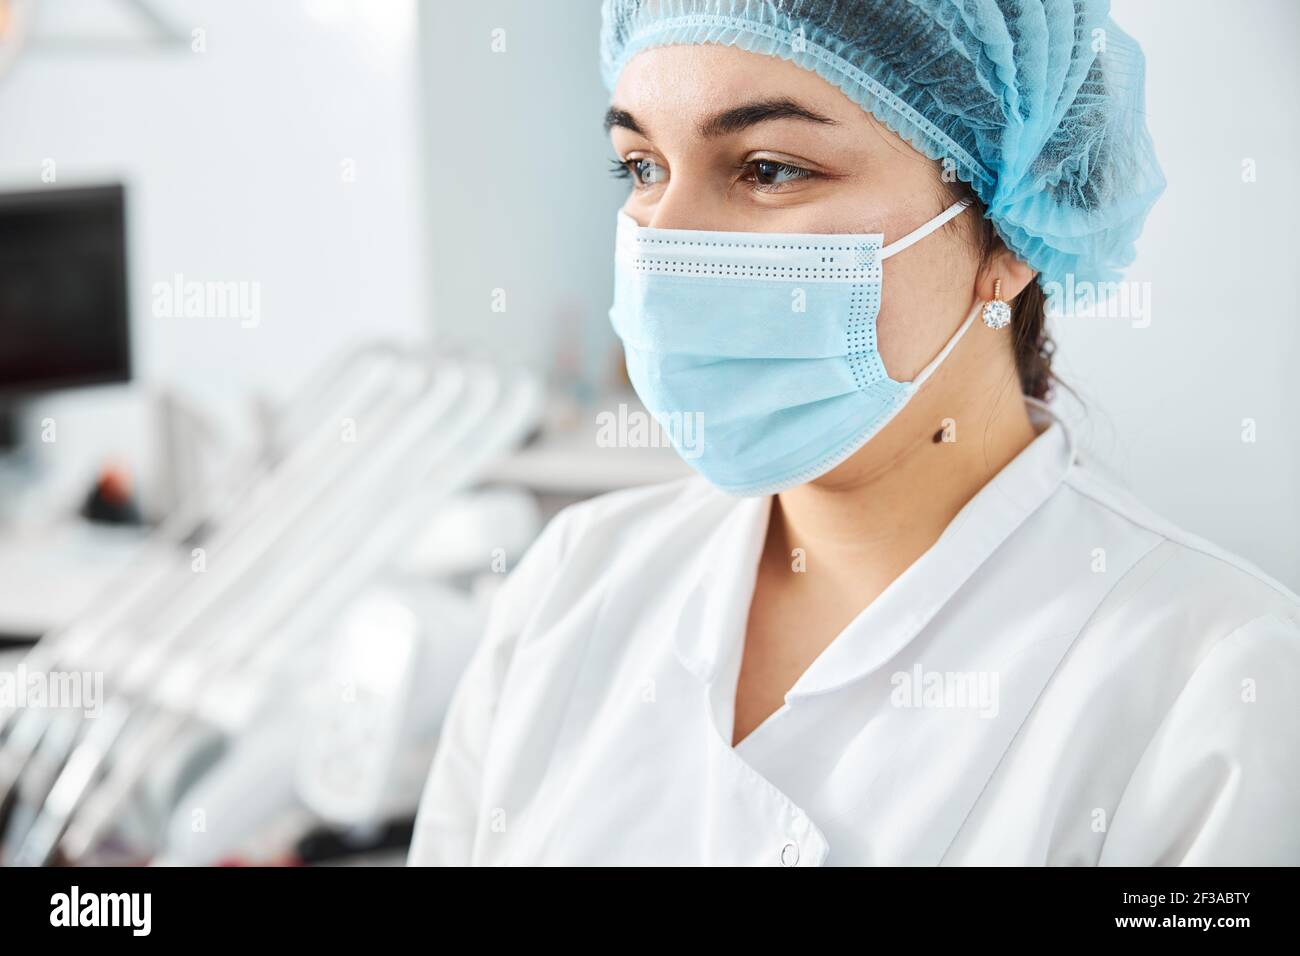 Masque chirurgical et chapeau médical sur la femme médecin Photo Stock -  Alamy